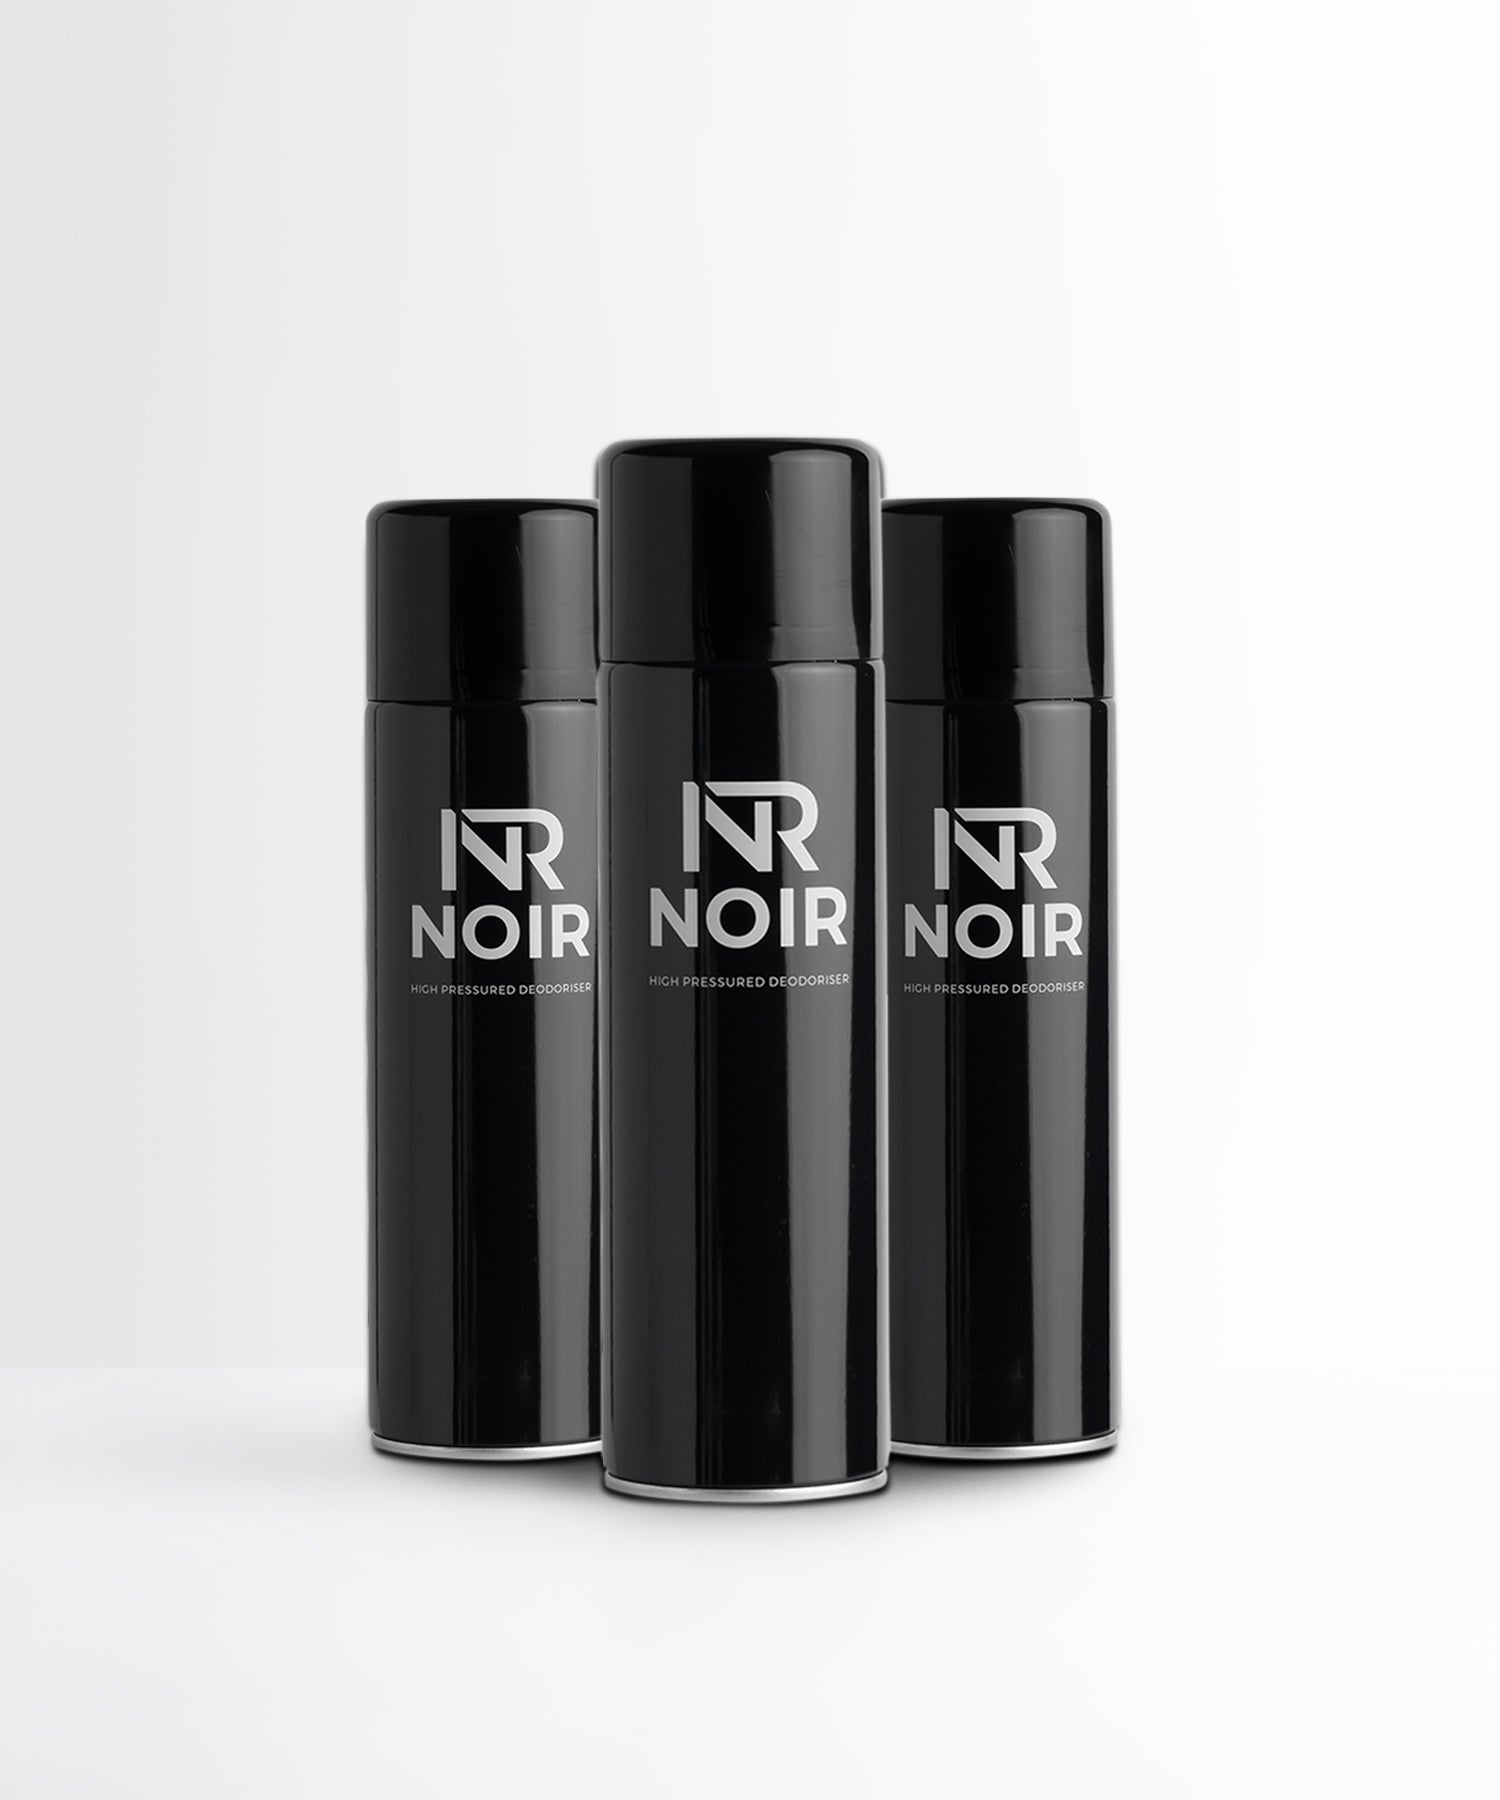 NOIR Luxury Fragrance Inspired Deodorisers / Air Fresheners